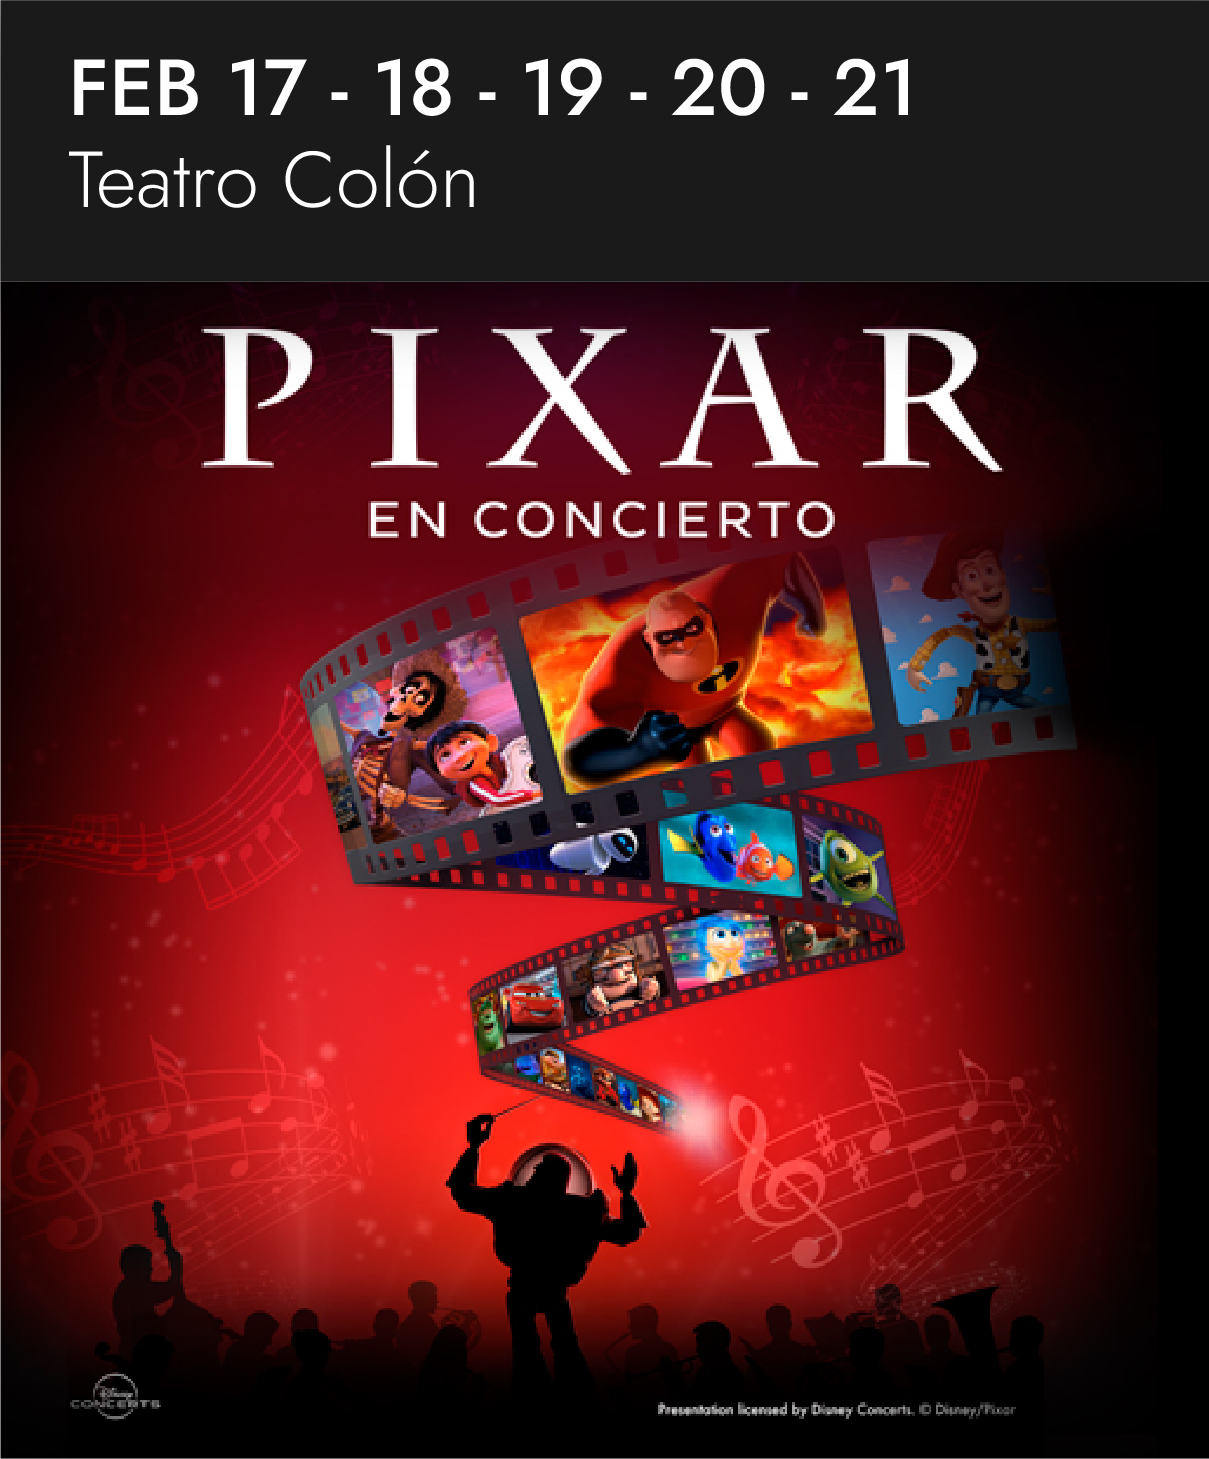 Pixar en concierto